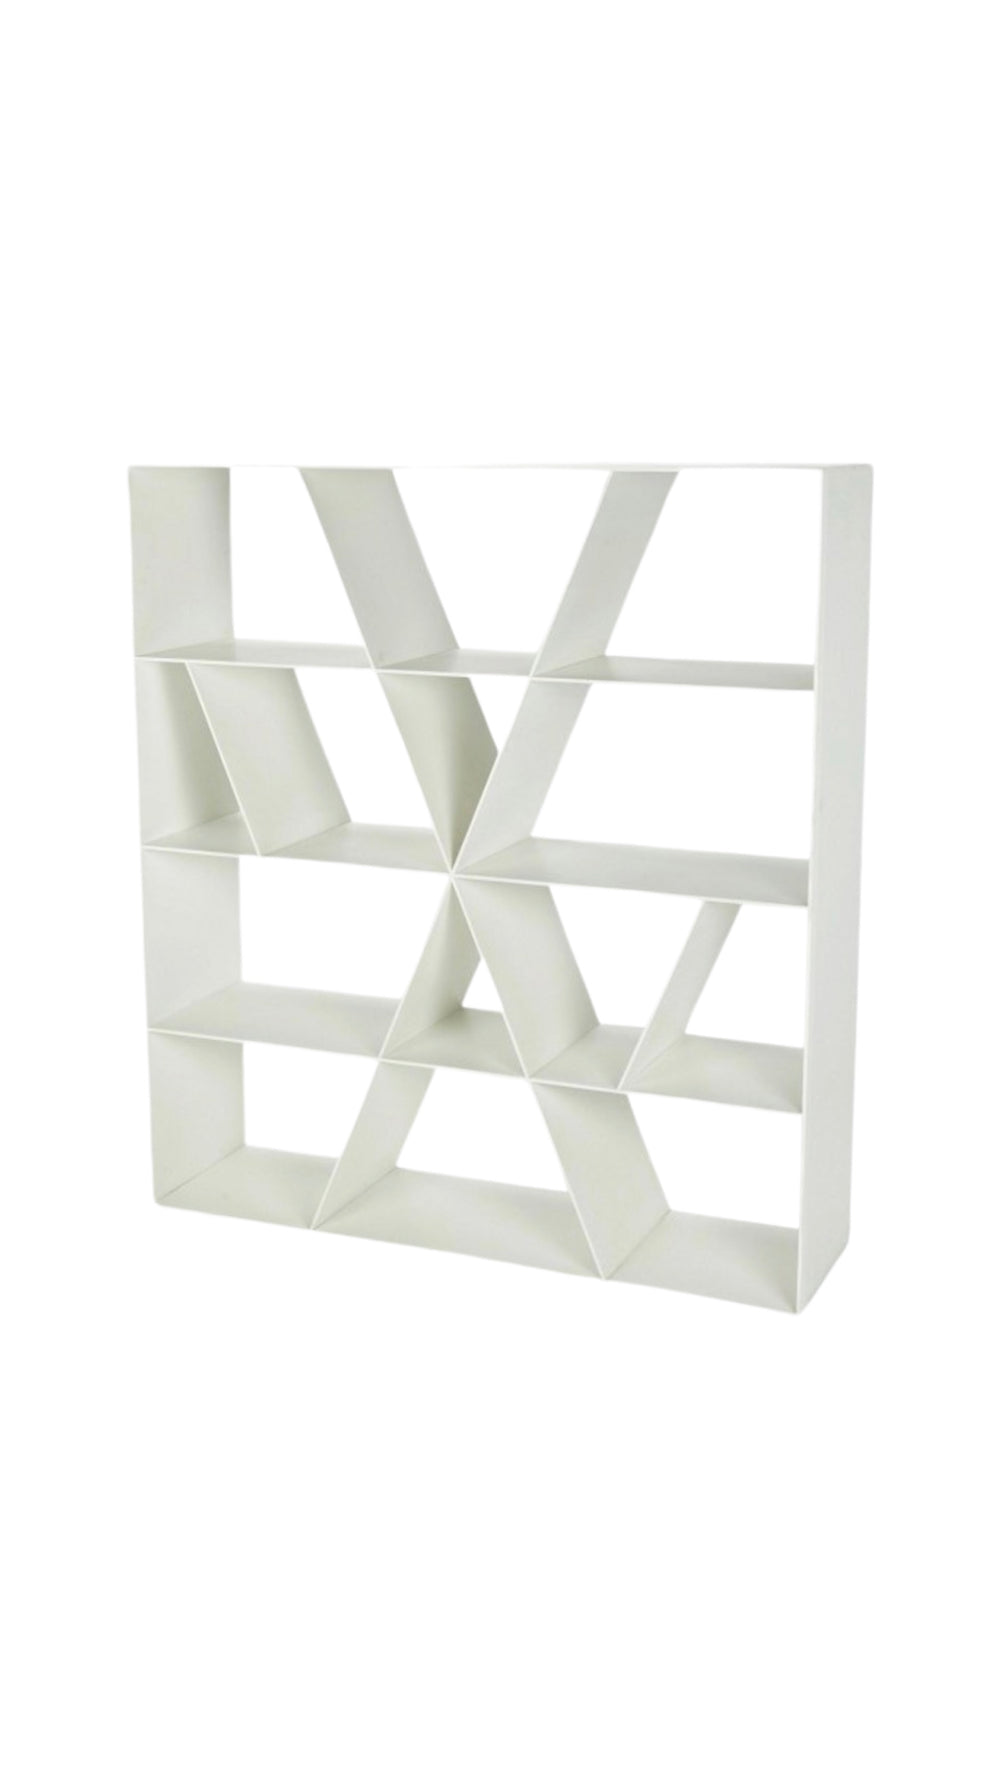 Naoto Fukasawa minimal model "X" shelf storage unit in Corian for B&B Italia, Italy circa 2005